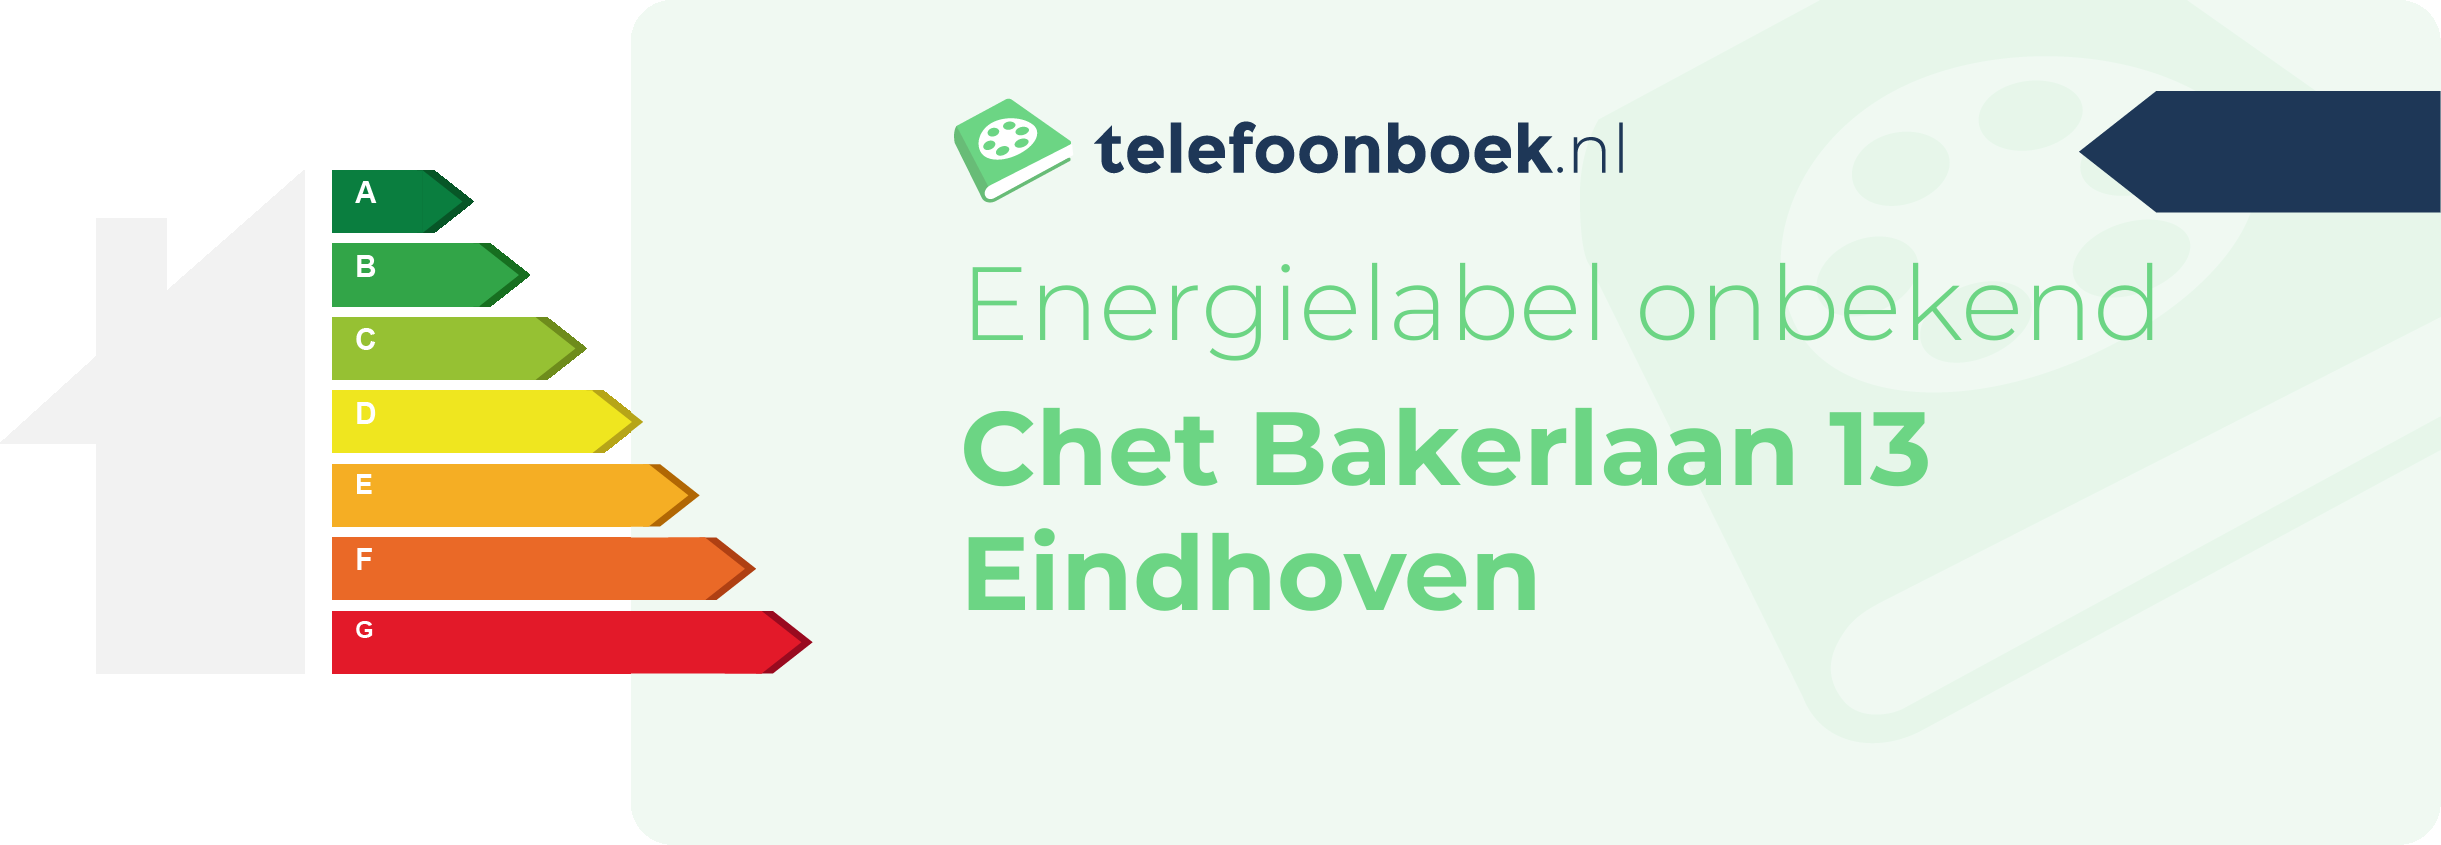 Energielabel Chet Bakerlaan 13 Eindhoven